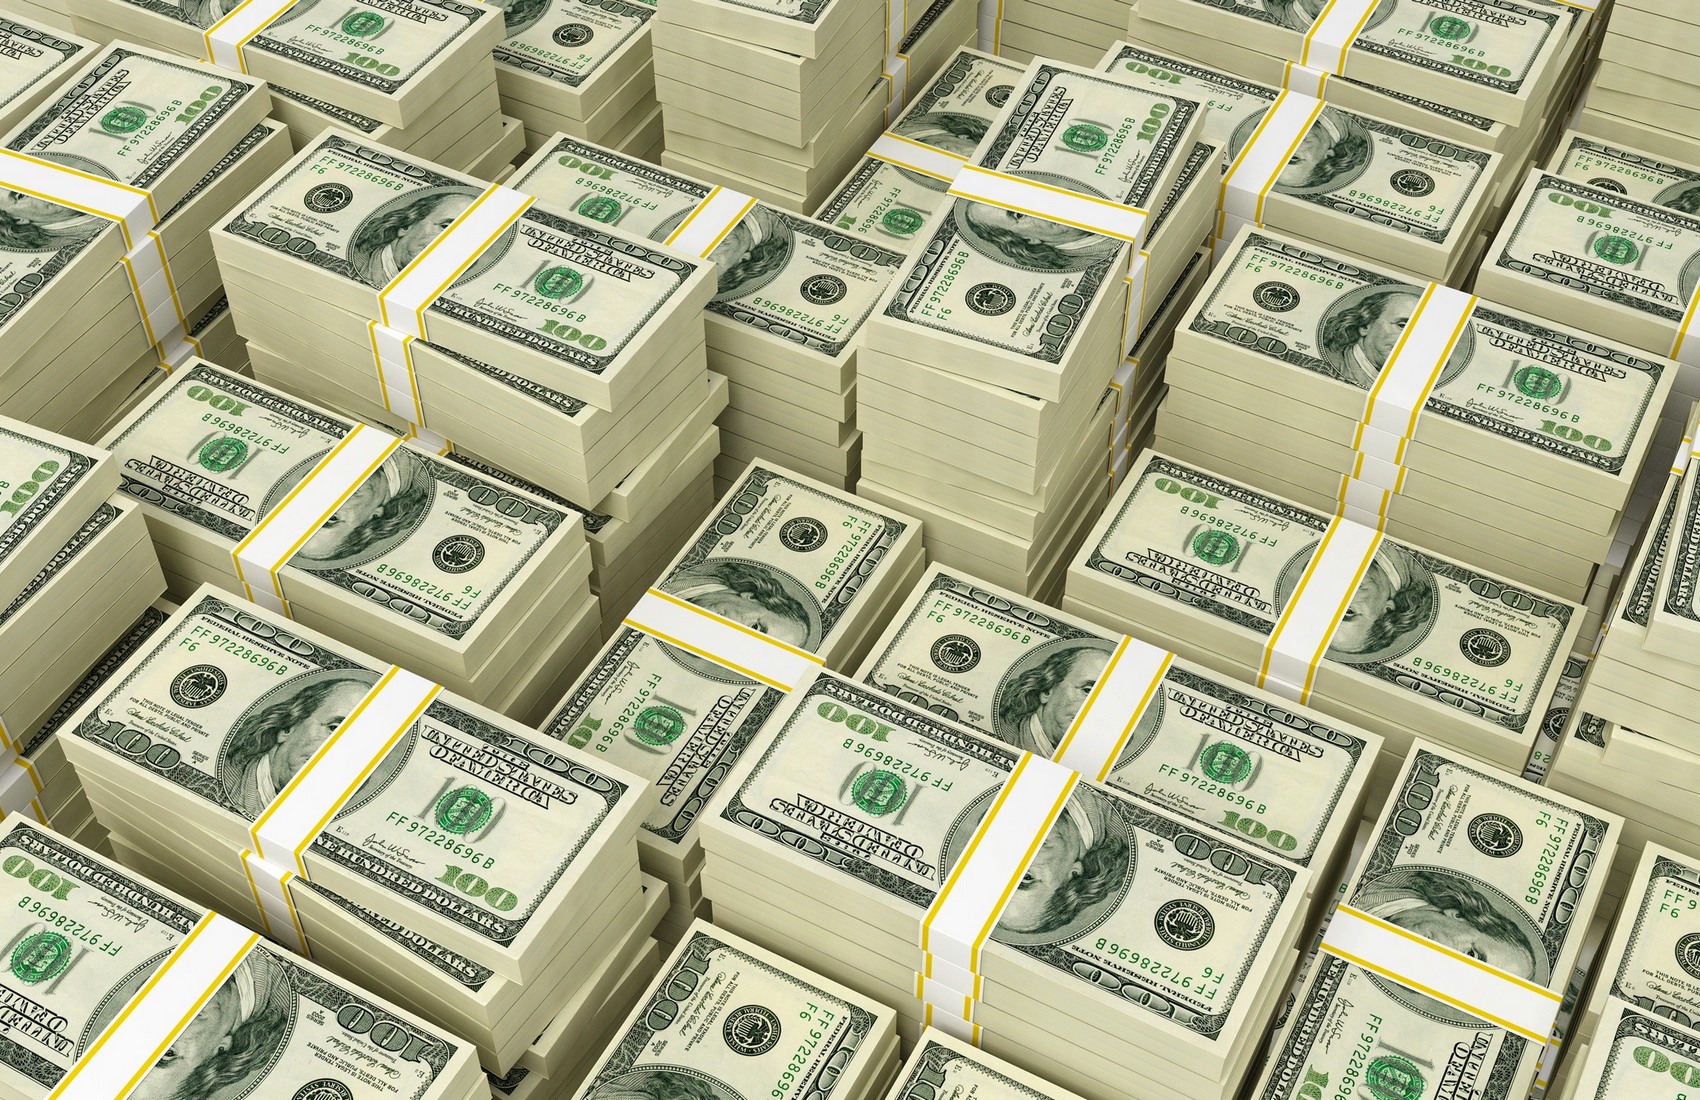 НБУ в течение дня выкупил на валютном рынке рекордные $ 700 млн